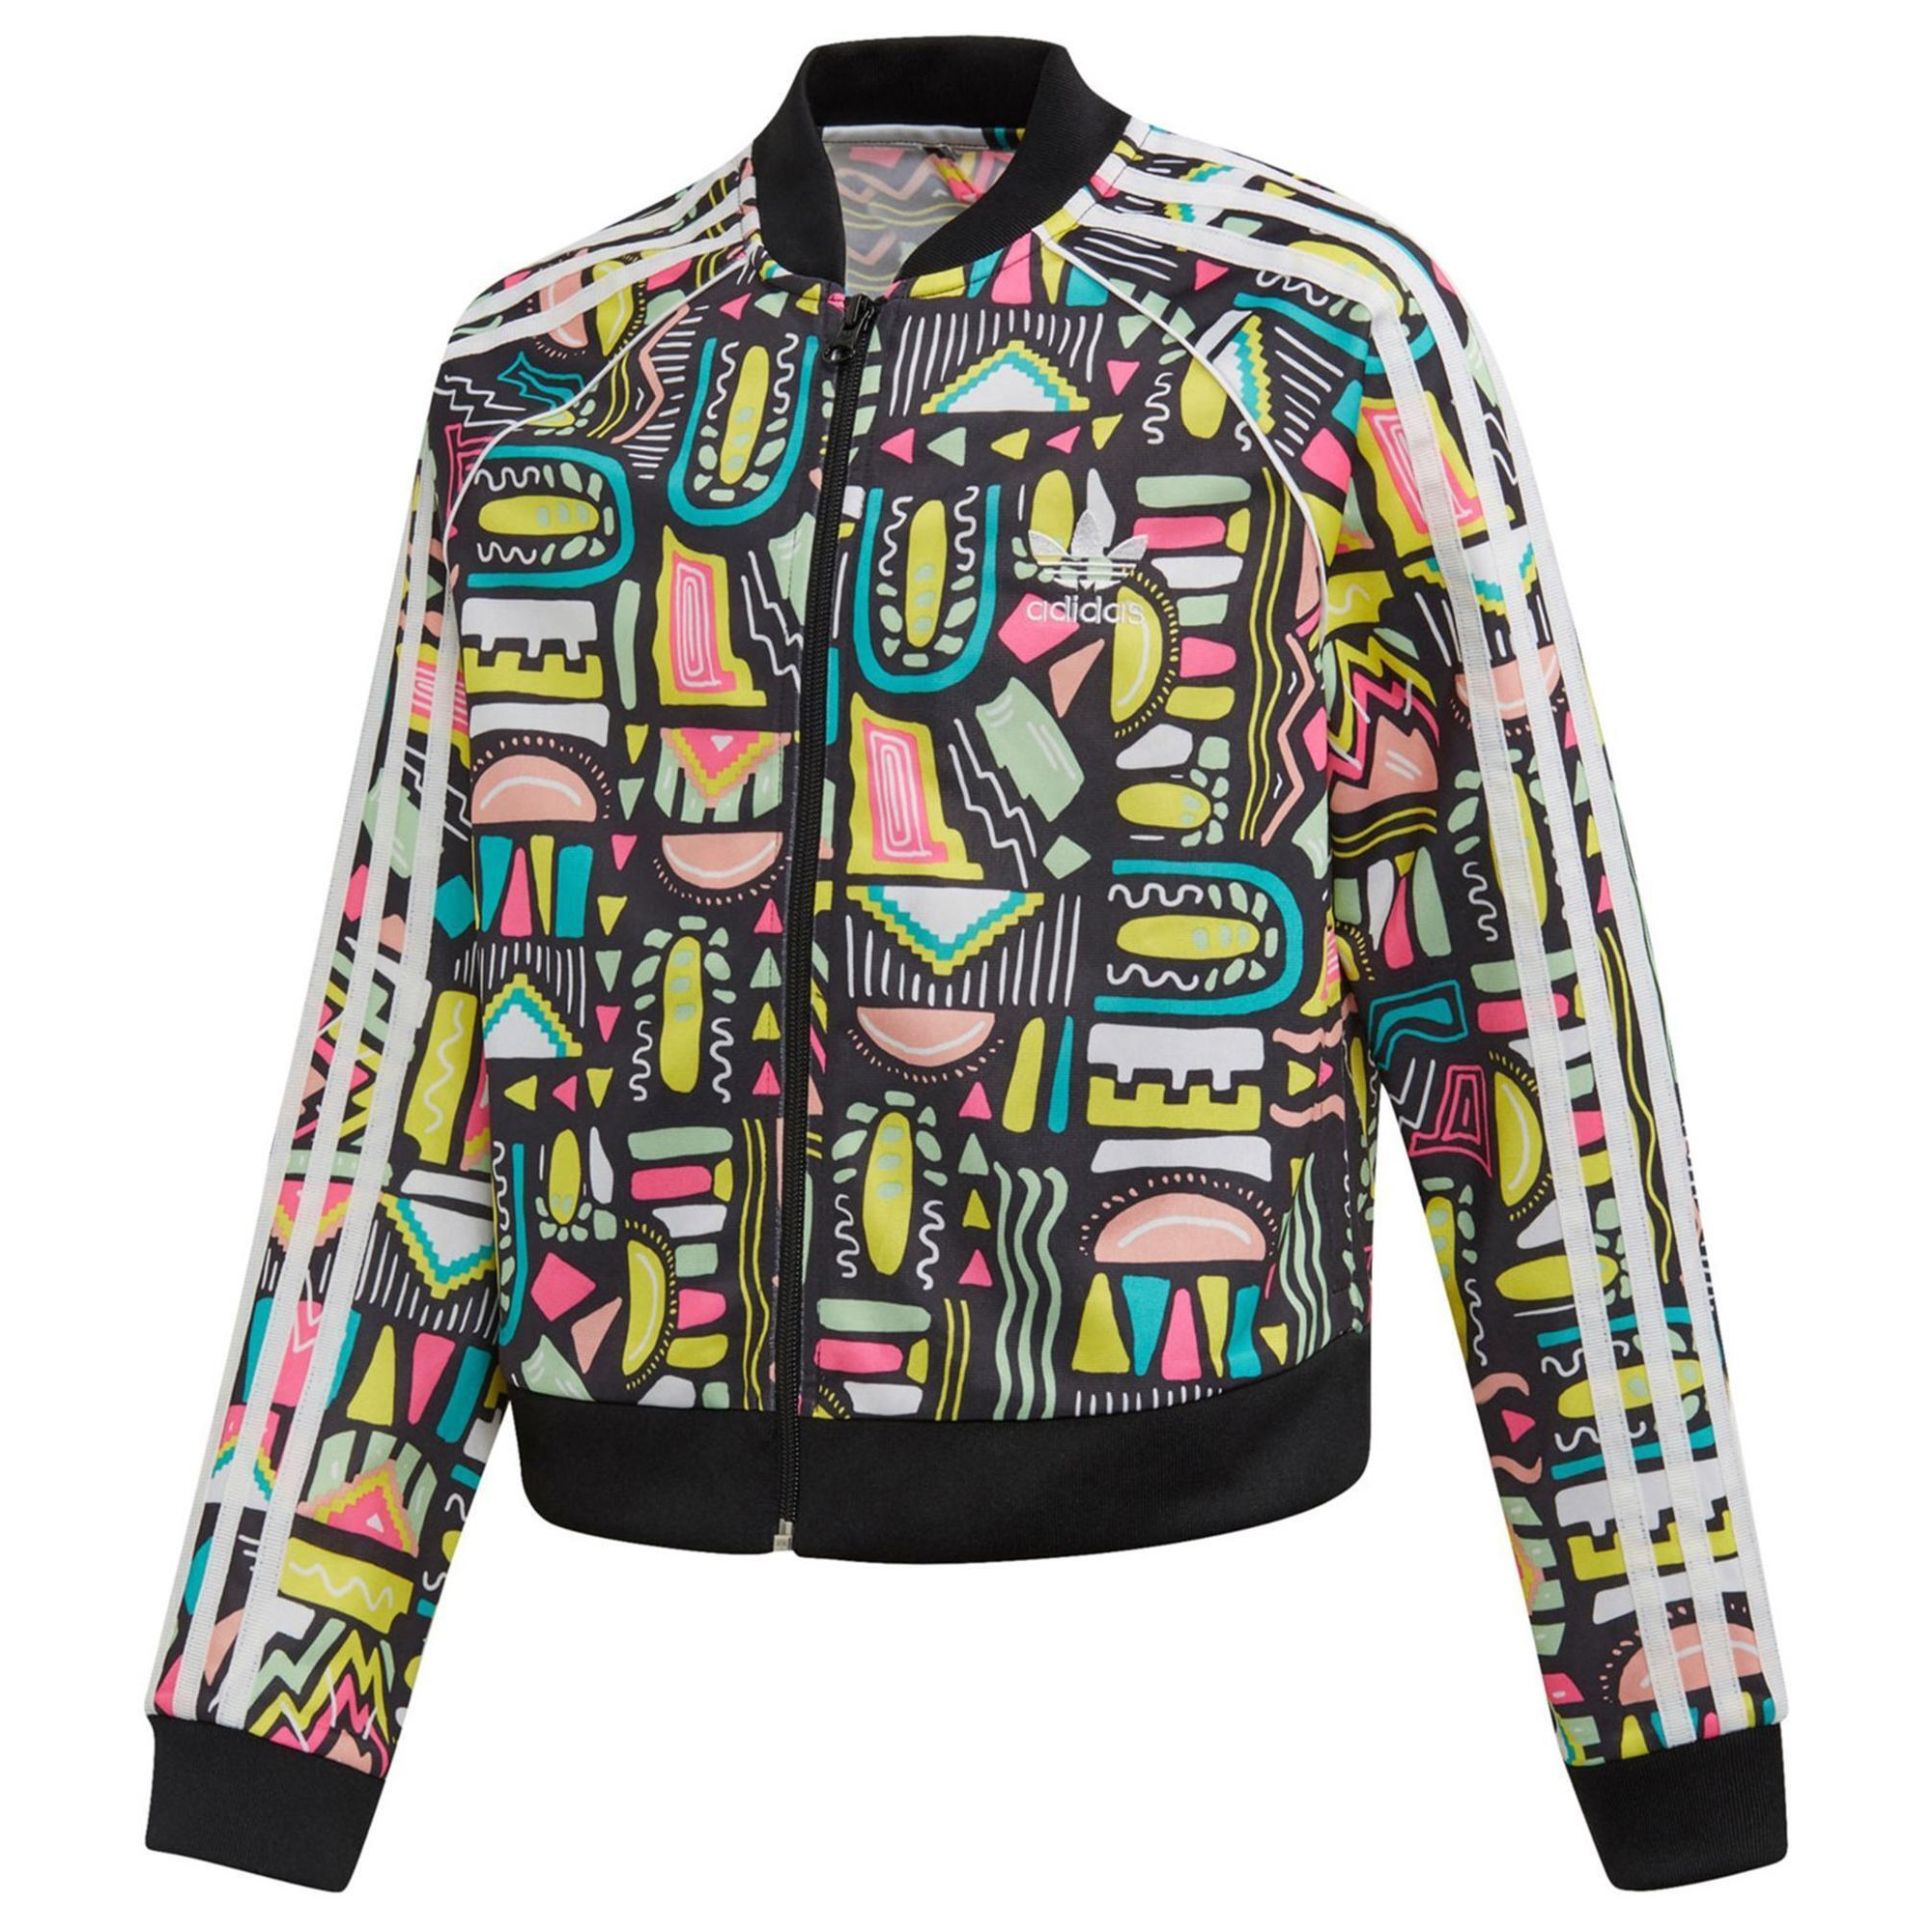 Adidas Girls Full Zip Track Jacket, Style # ED7869 alternate image